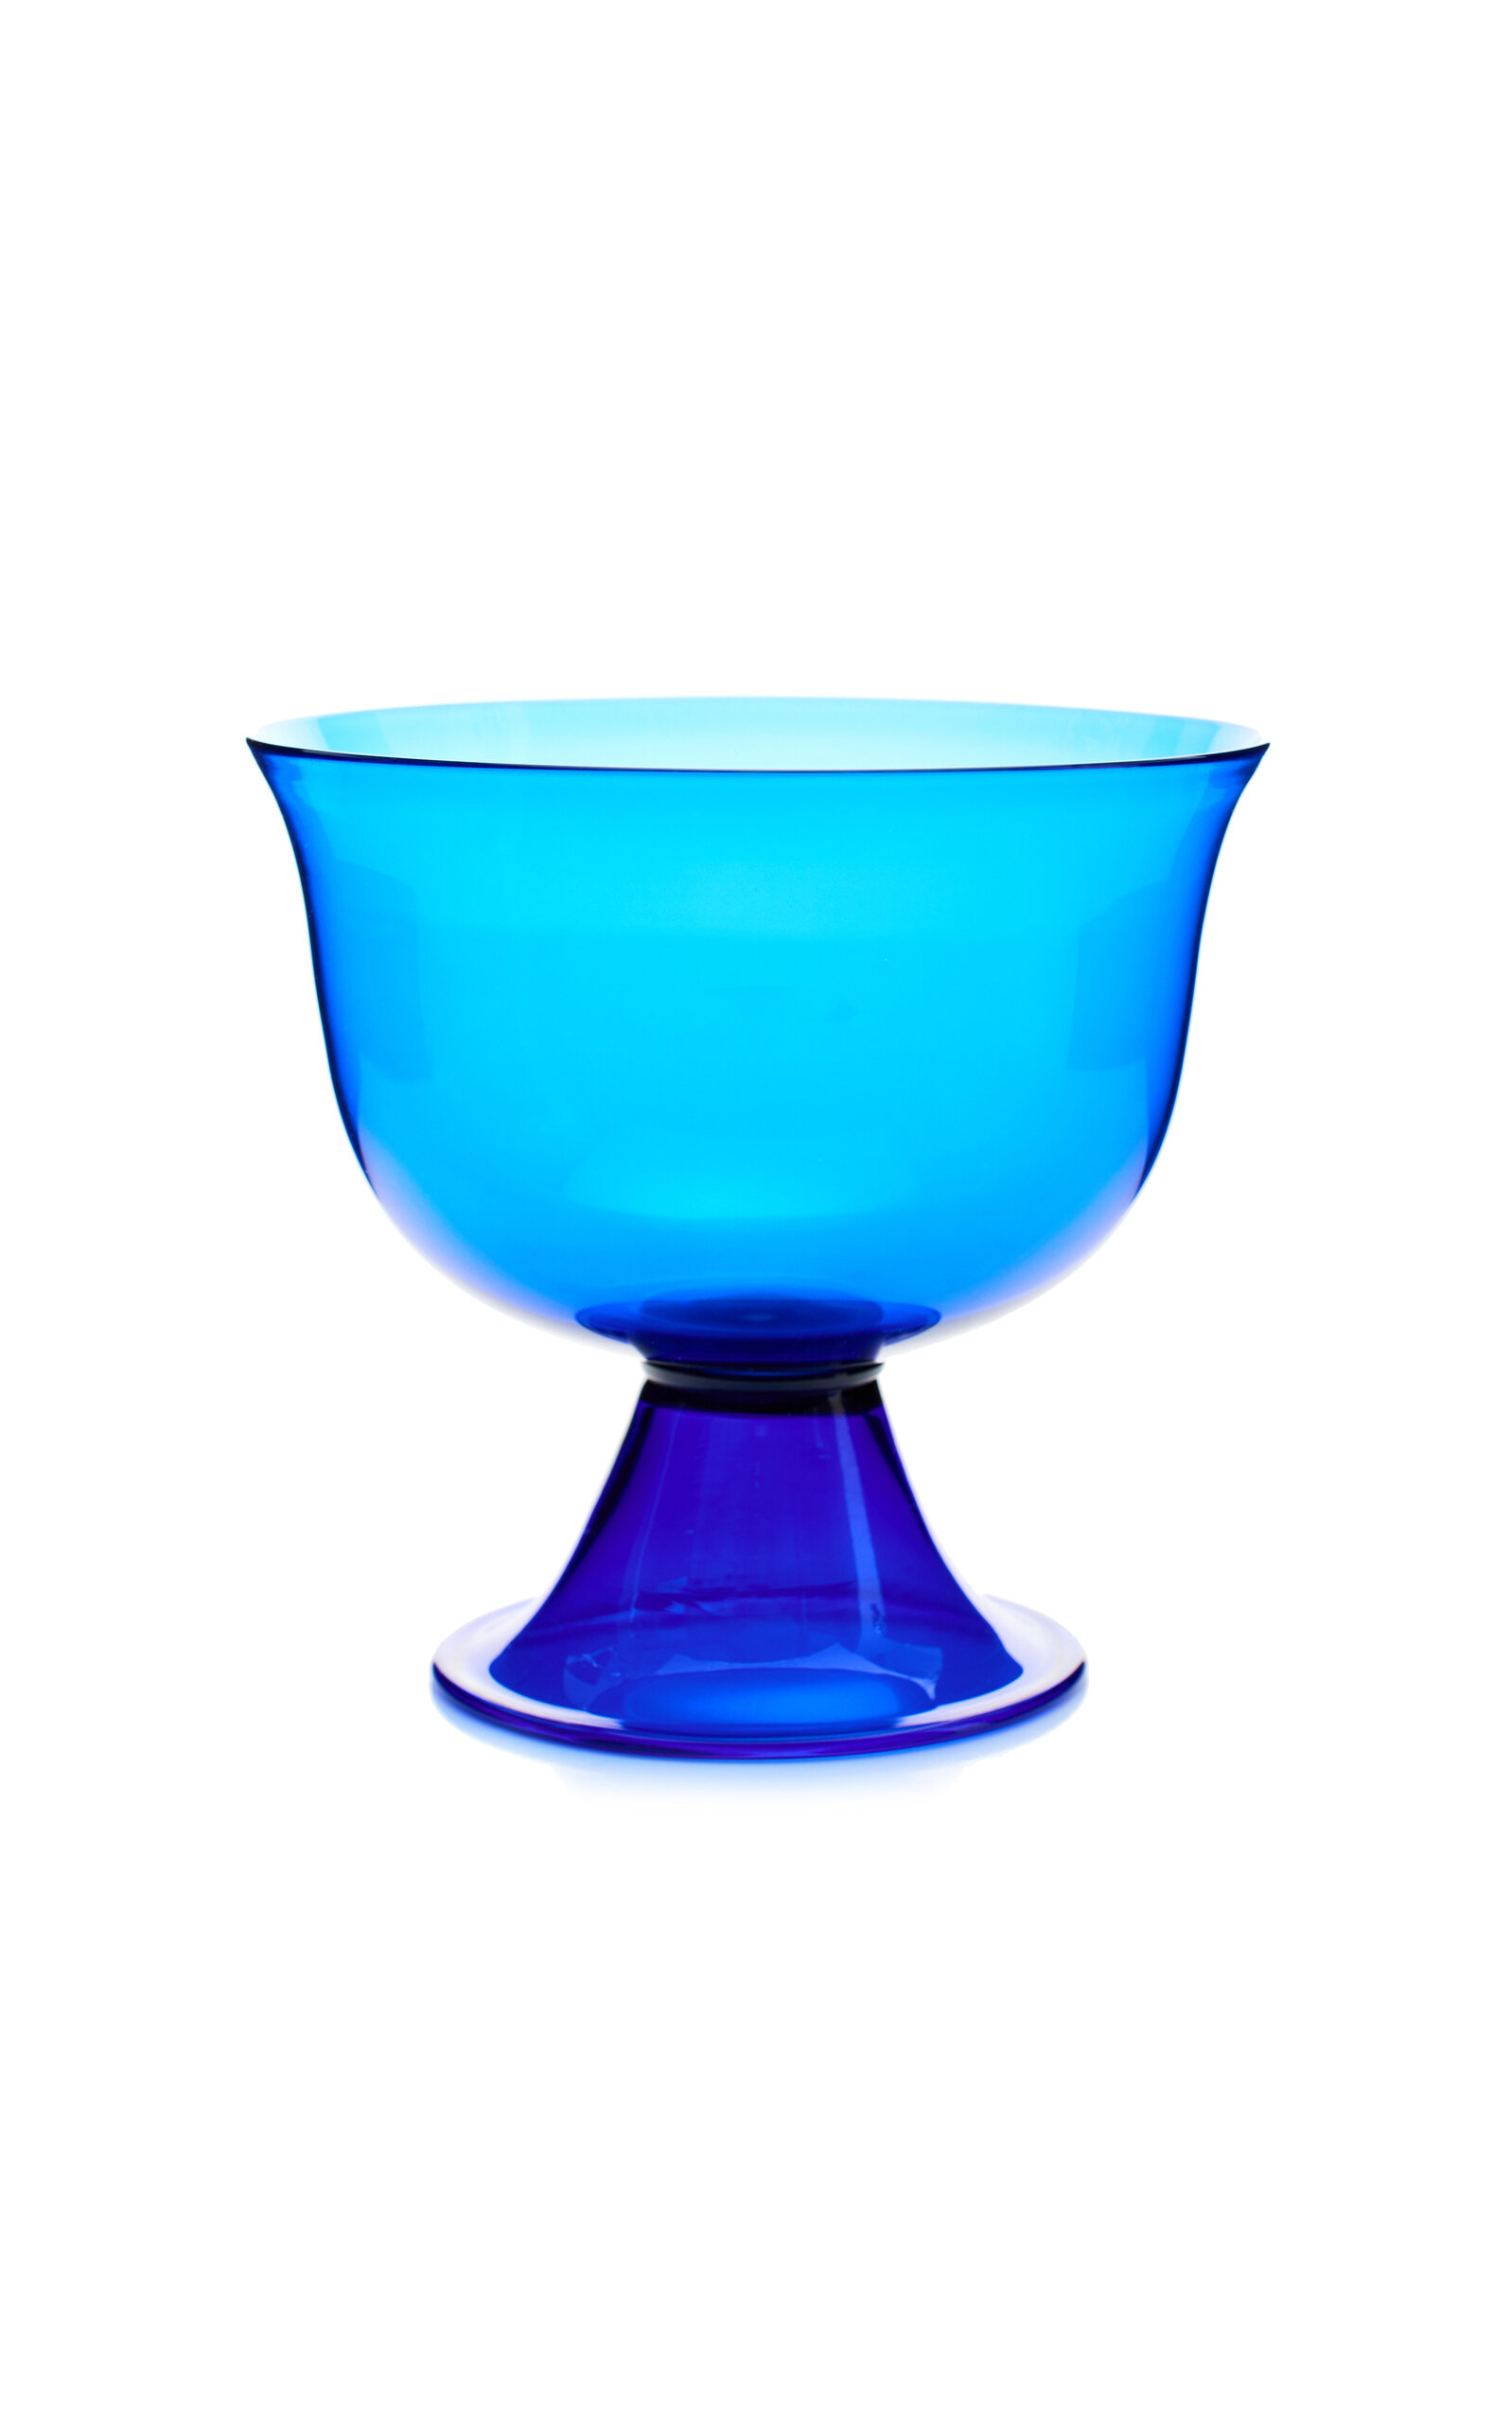 Moda Domus Barovier Medium Bowl In Blue